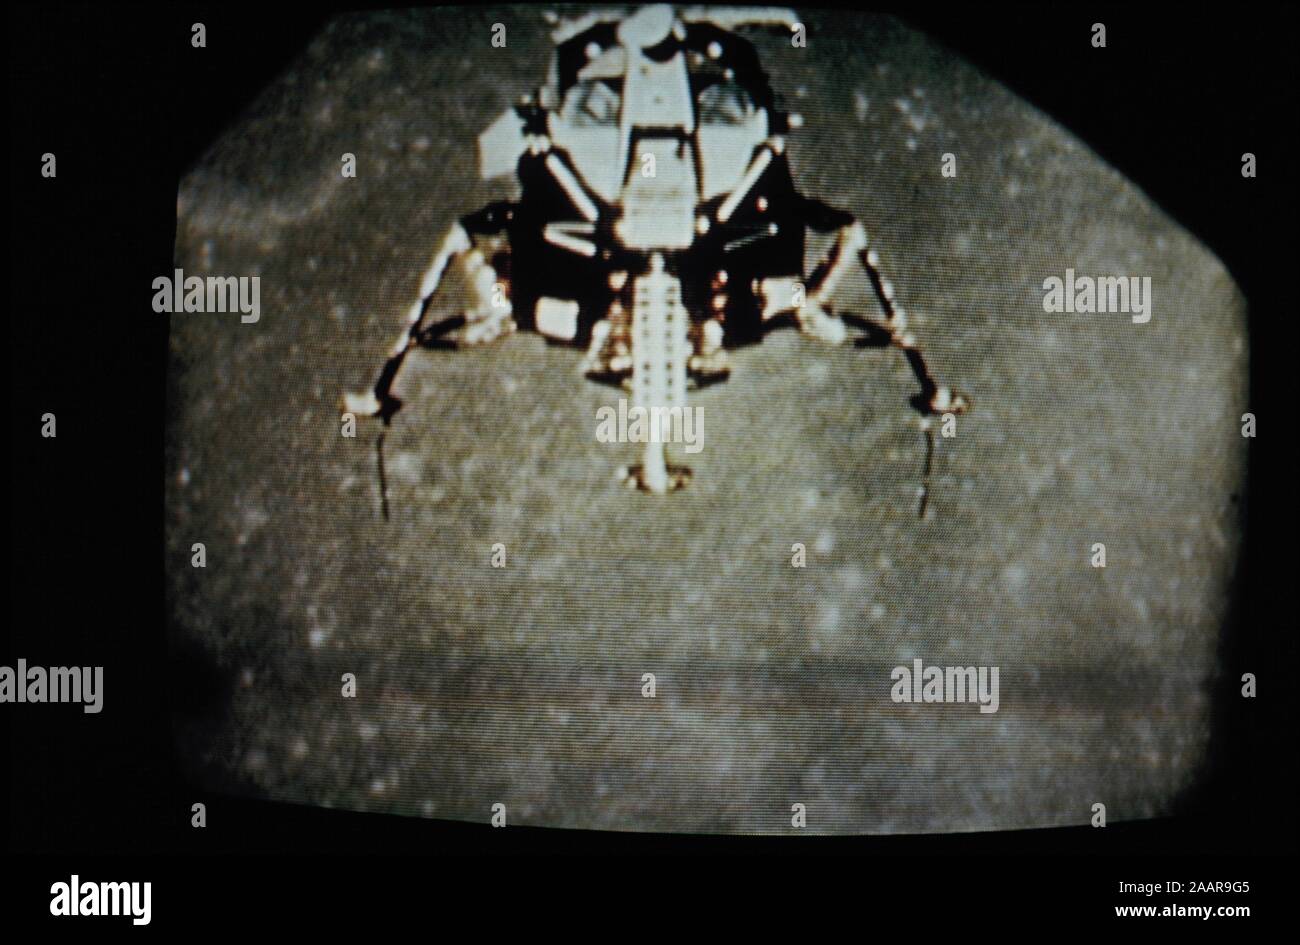 - Teleclip module lunaire Apollo 11 ordre croissant de lune - surface photographie prise directement à partir de l'écran de télévision vers 1969 Banque D'Images